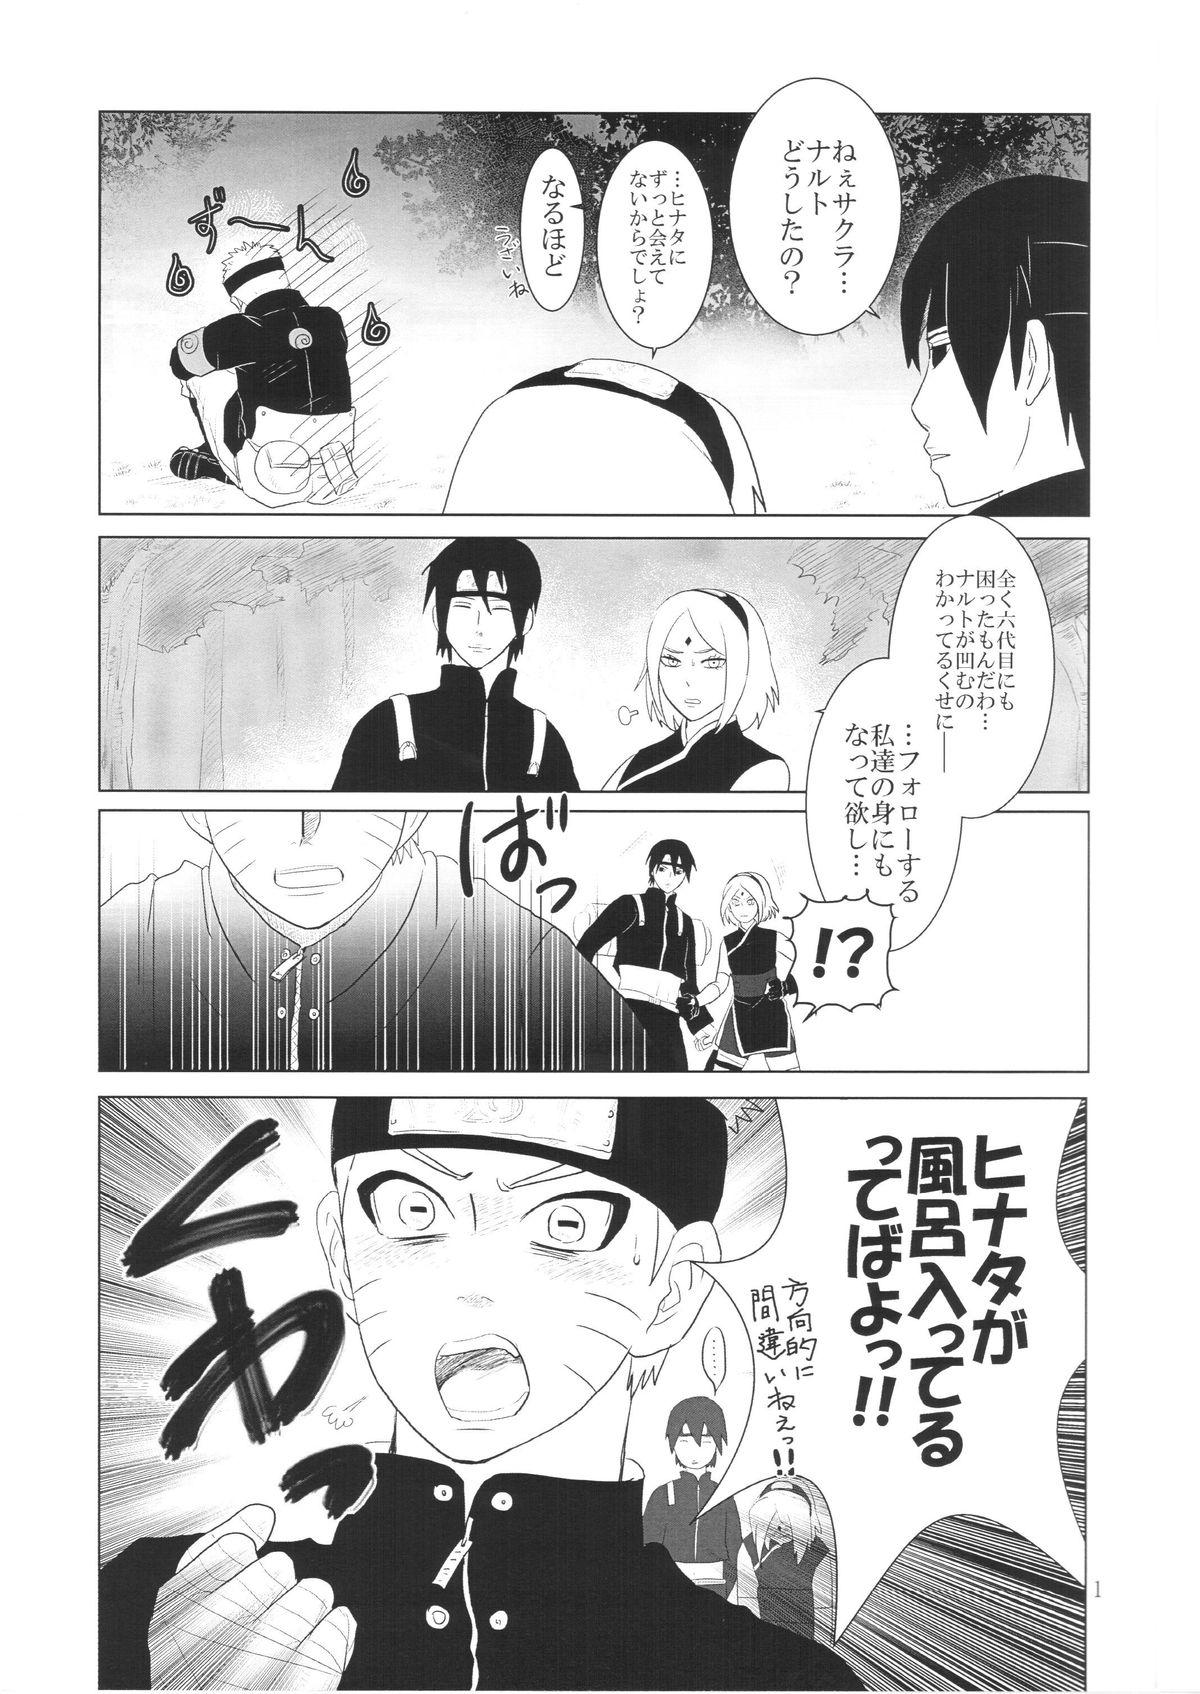 Cavalgando Kanata no omoi wa ryoute ni tokeru - Naruto Putinha - Page 4